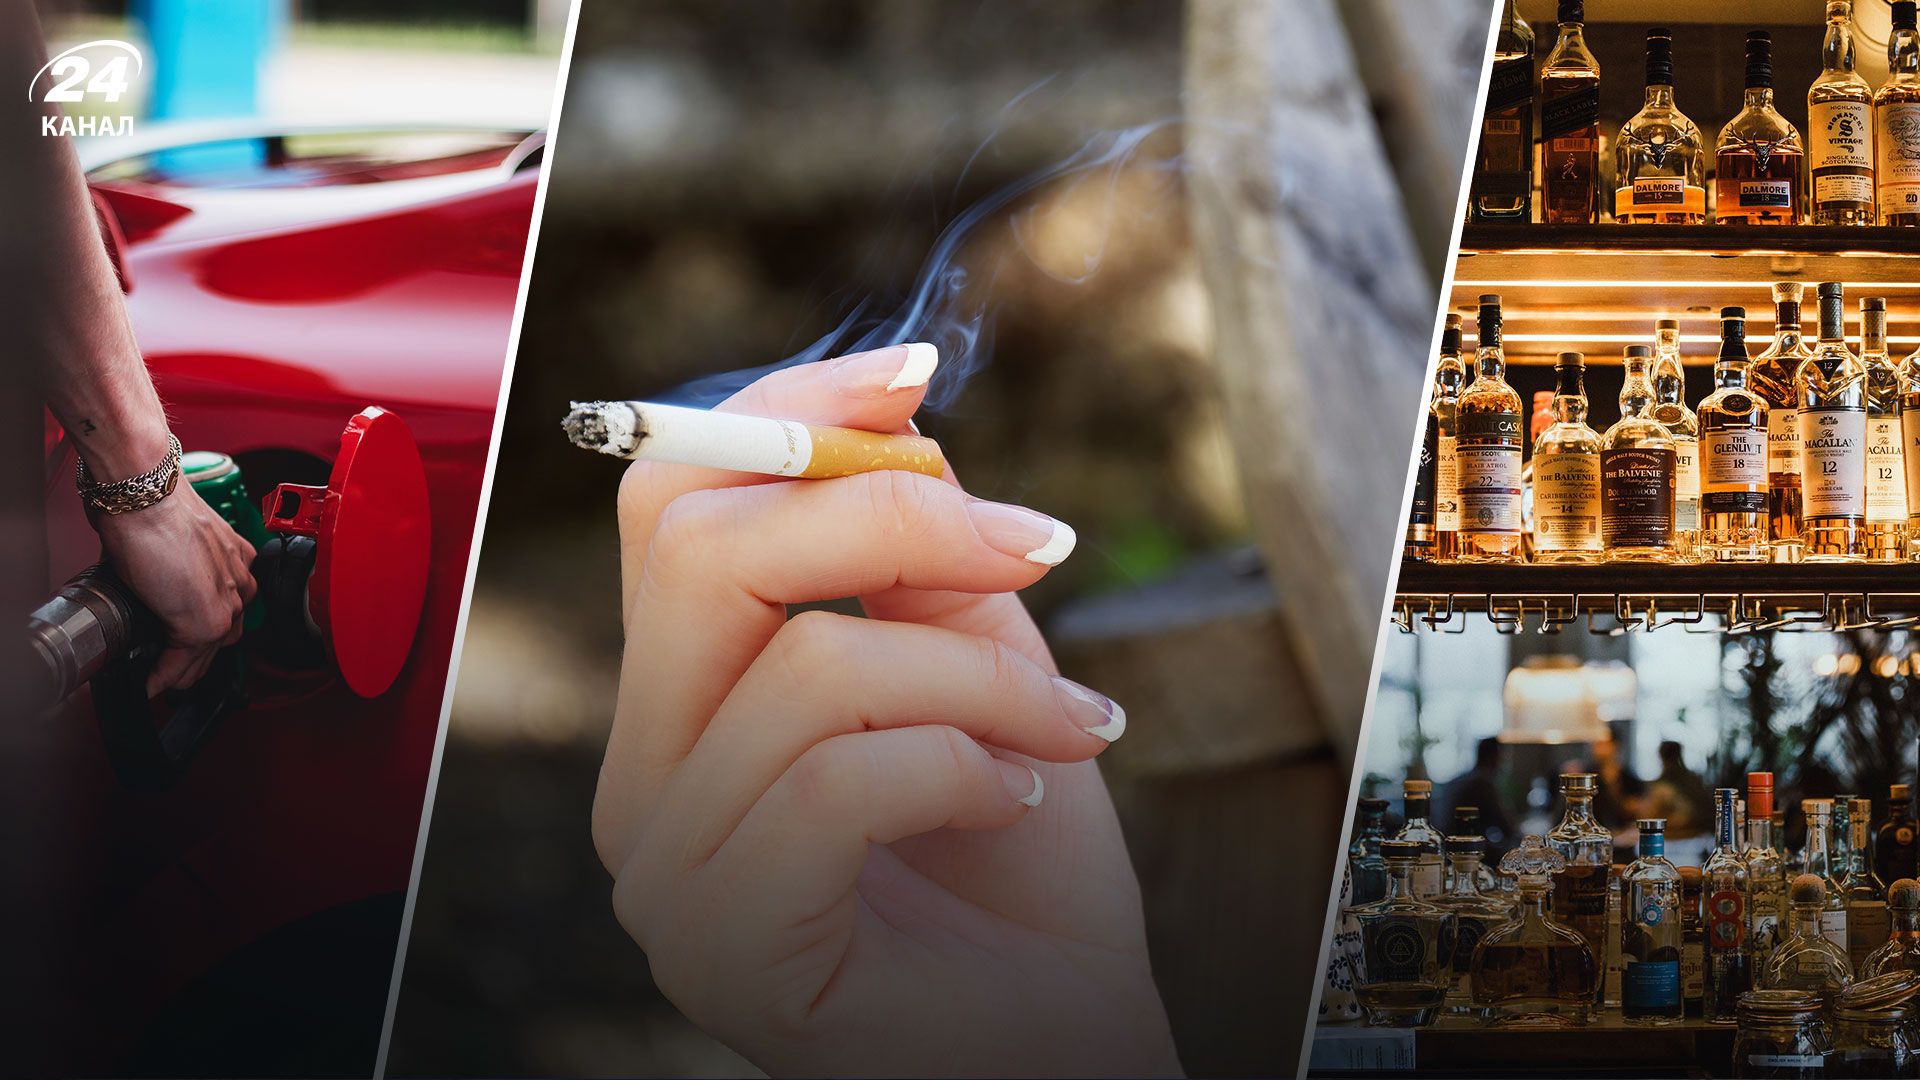 Пальне, алкоголь та тютюн можуть подорожчати у 2023, якщо акциз зросте